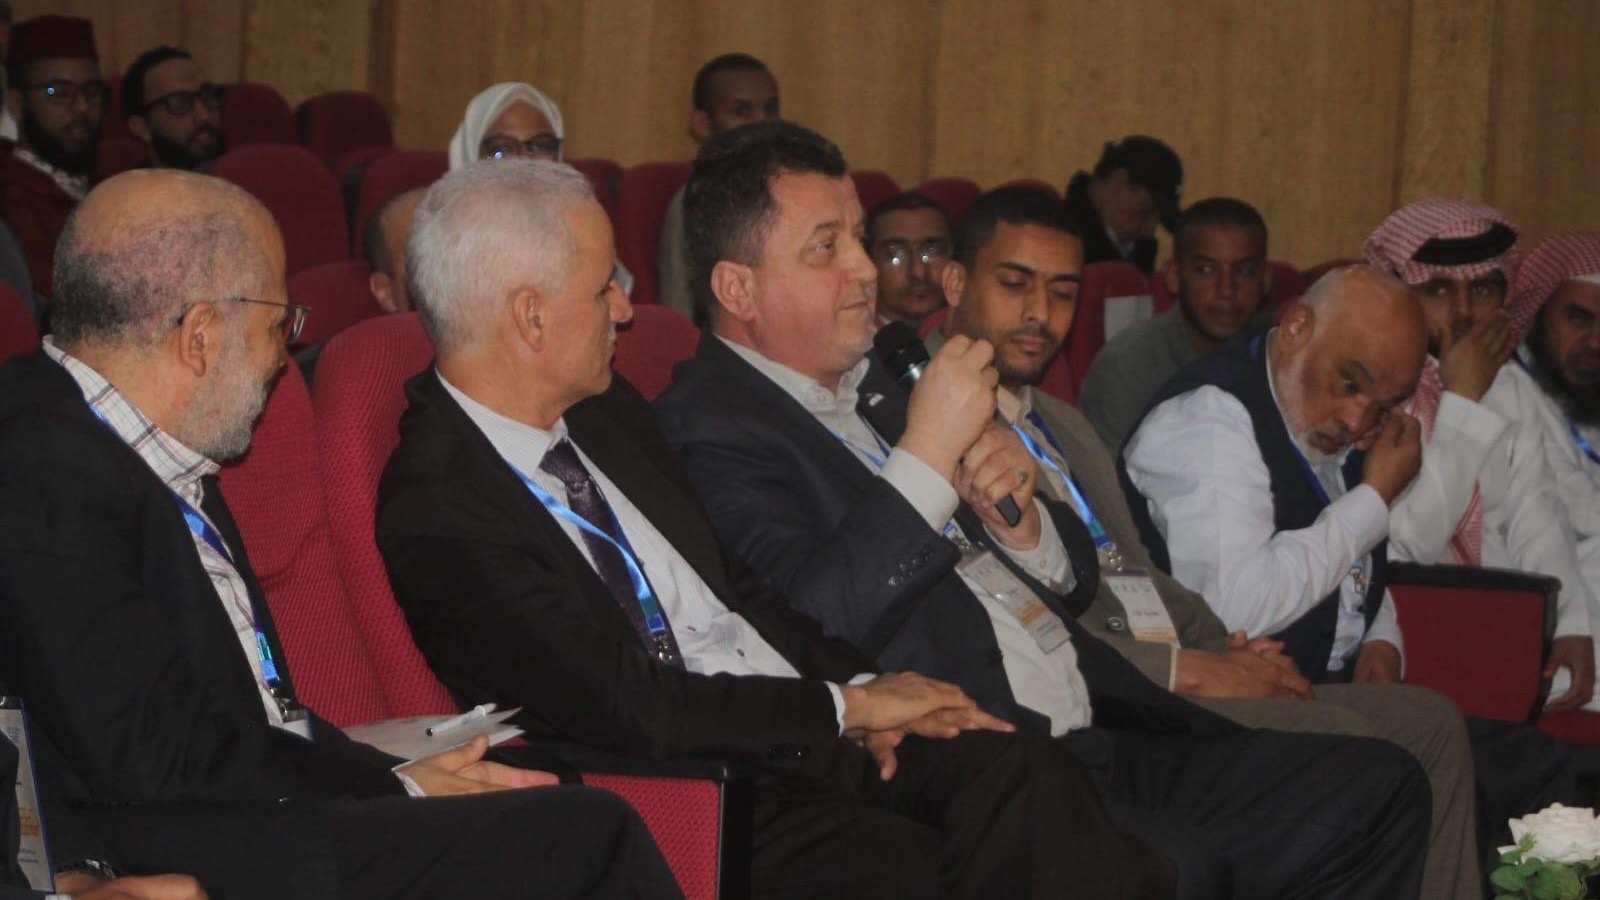 Kazablanka: Prof. dr. Safvet Halilović učestvovao u radu međunarodnog simpozija o Poslanikovoj siri